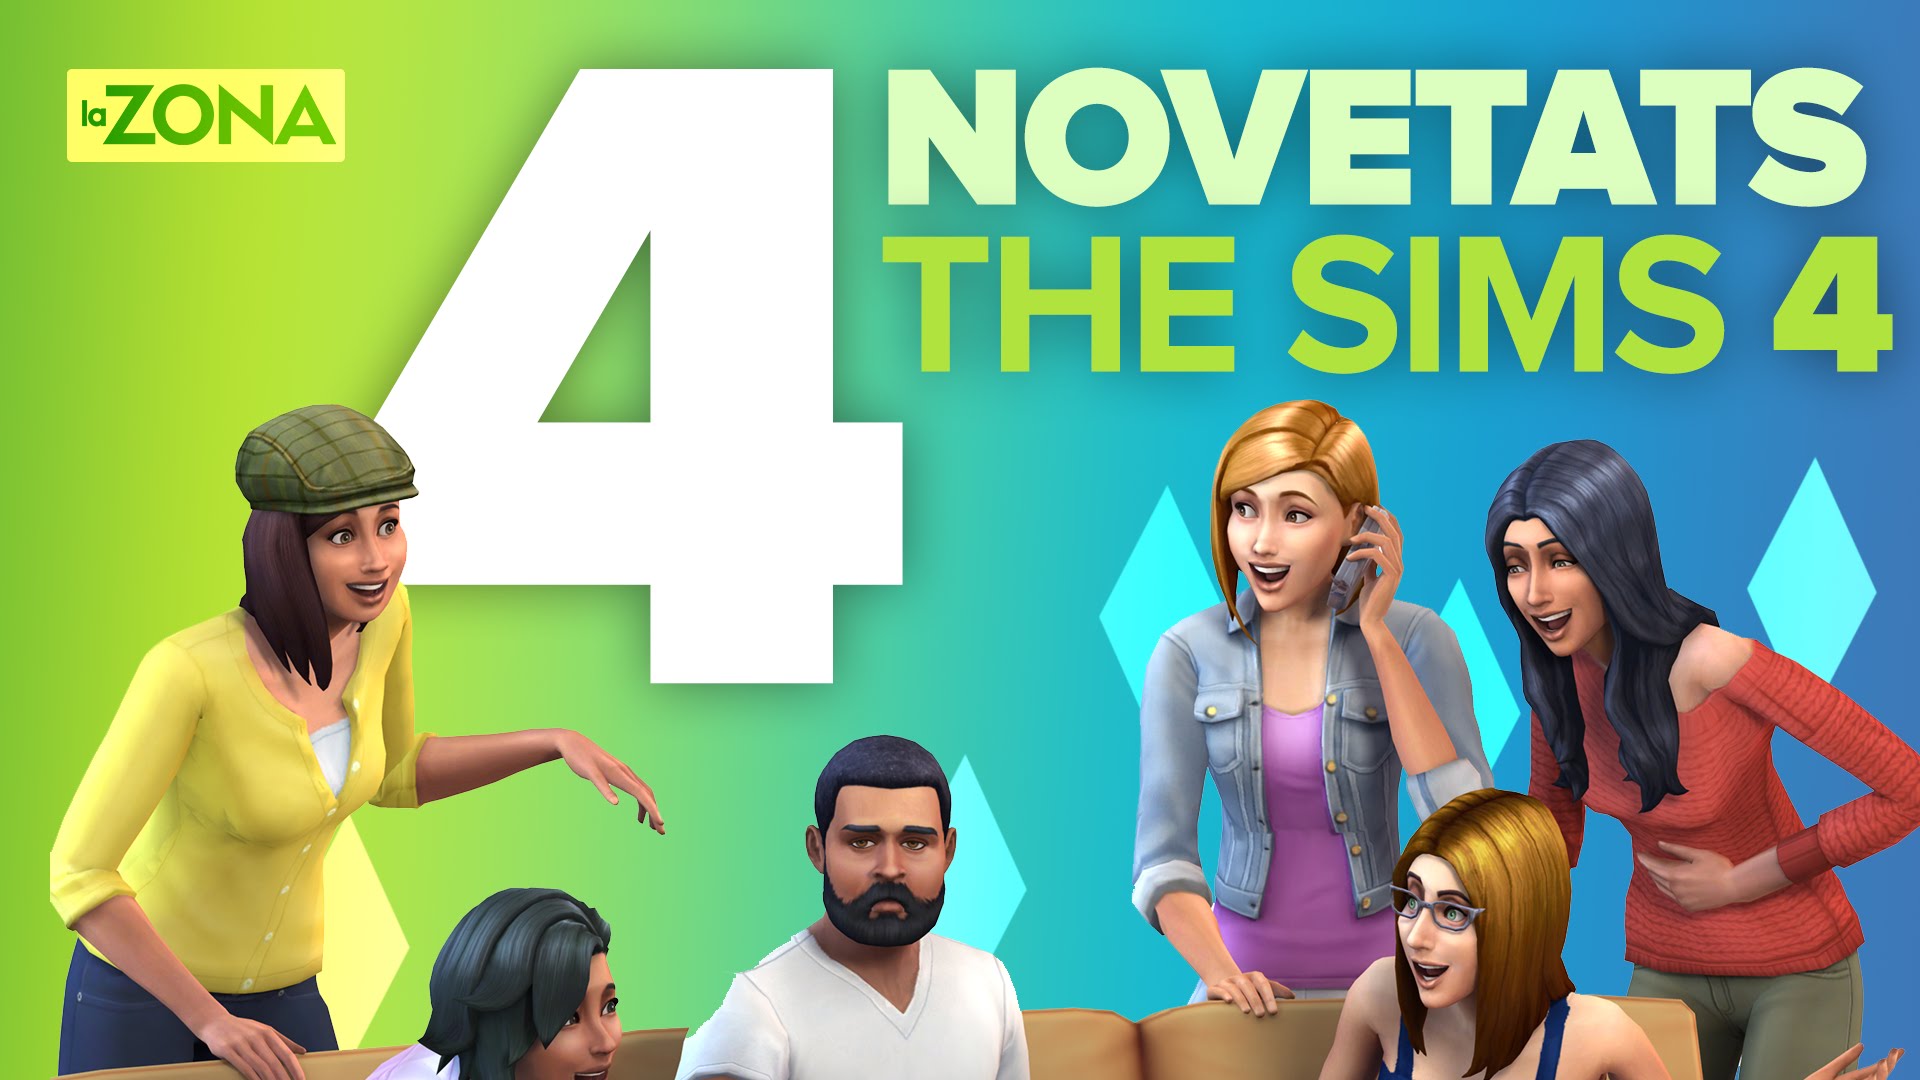 La Zona — 4 novetats estrella de The Sims 4 de LaZona